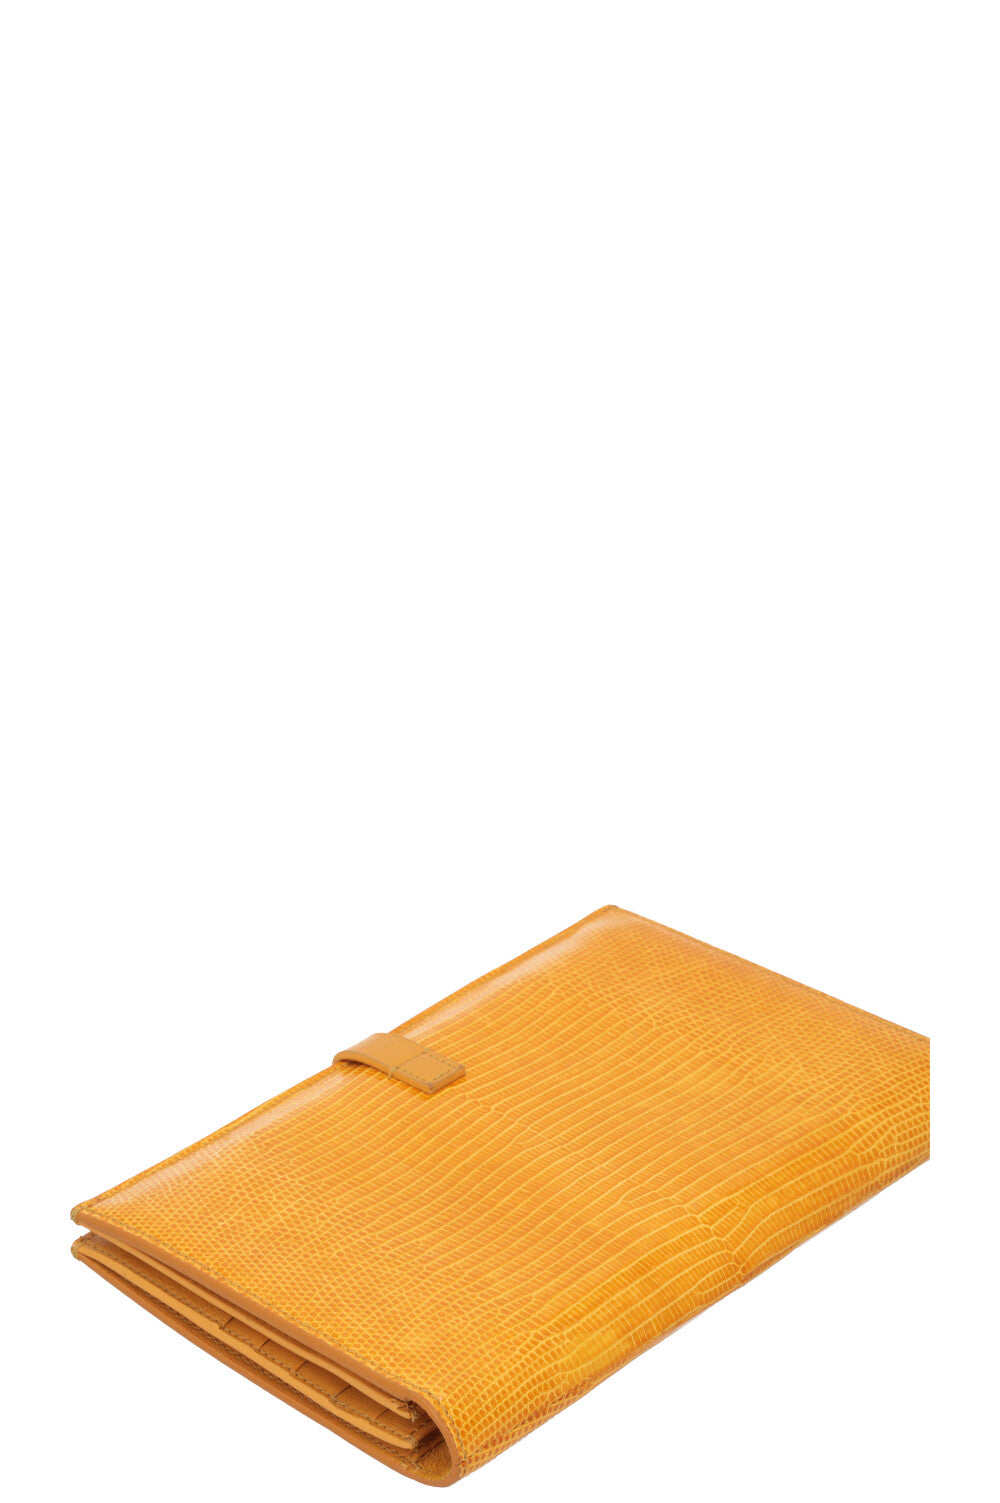 CÉLINE Large Strap Wallet Lizard Yellow